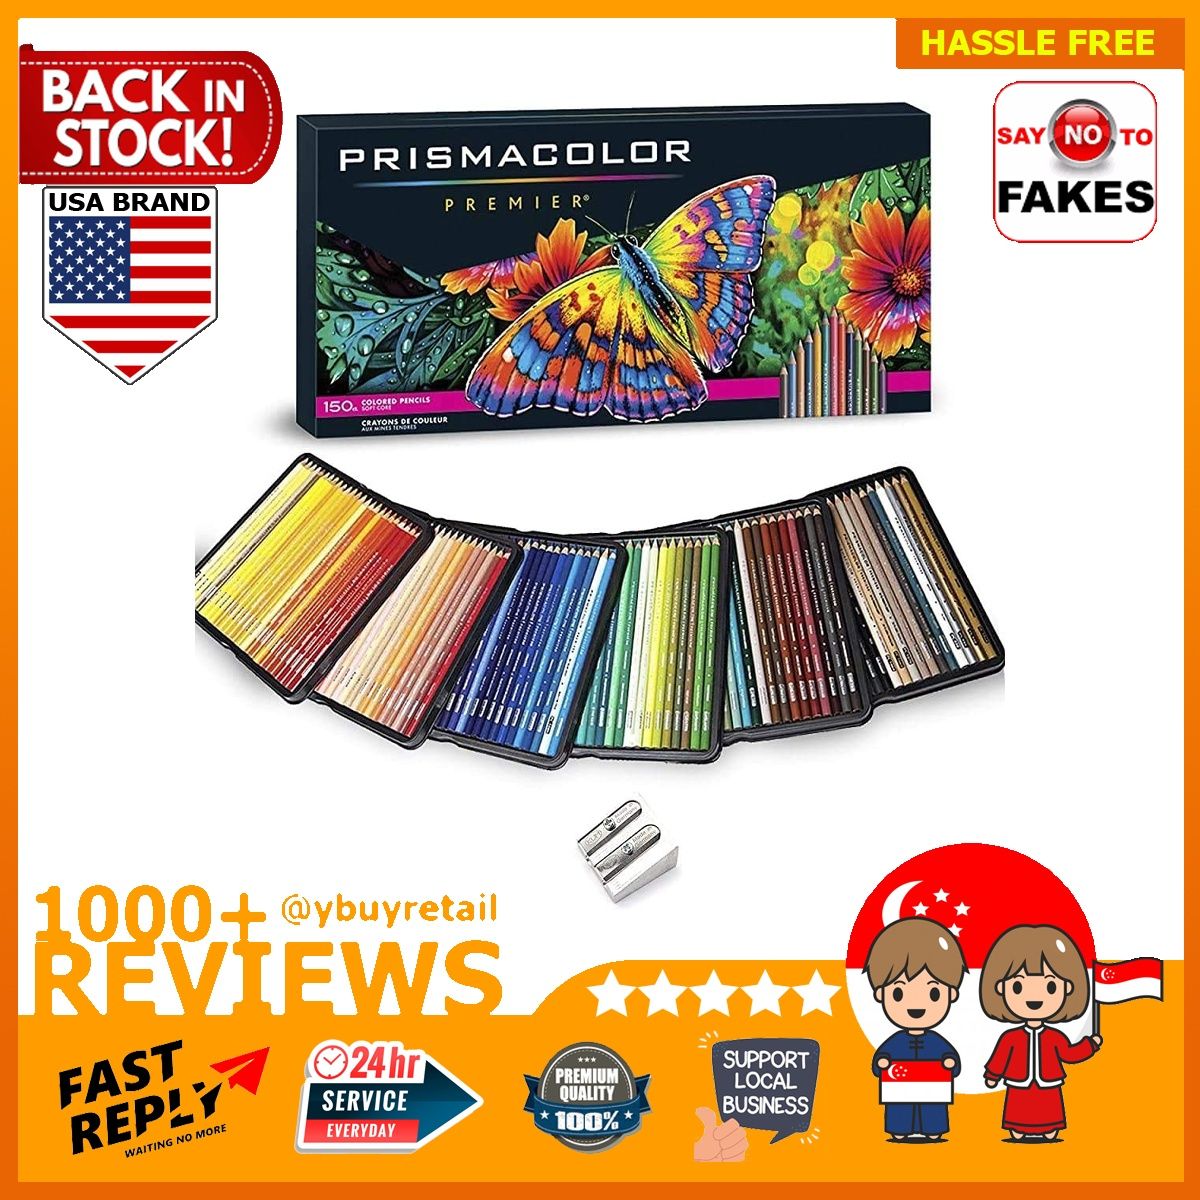 Prismacolor] Premier Soft Core Colored Pencil Set of 150 Assorted